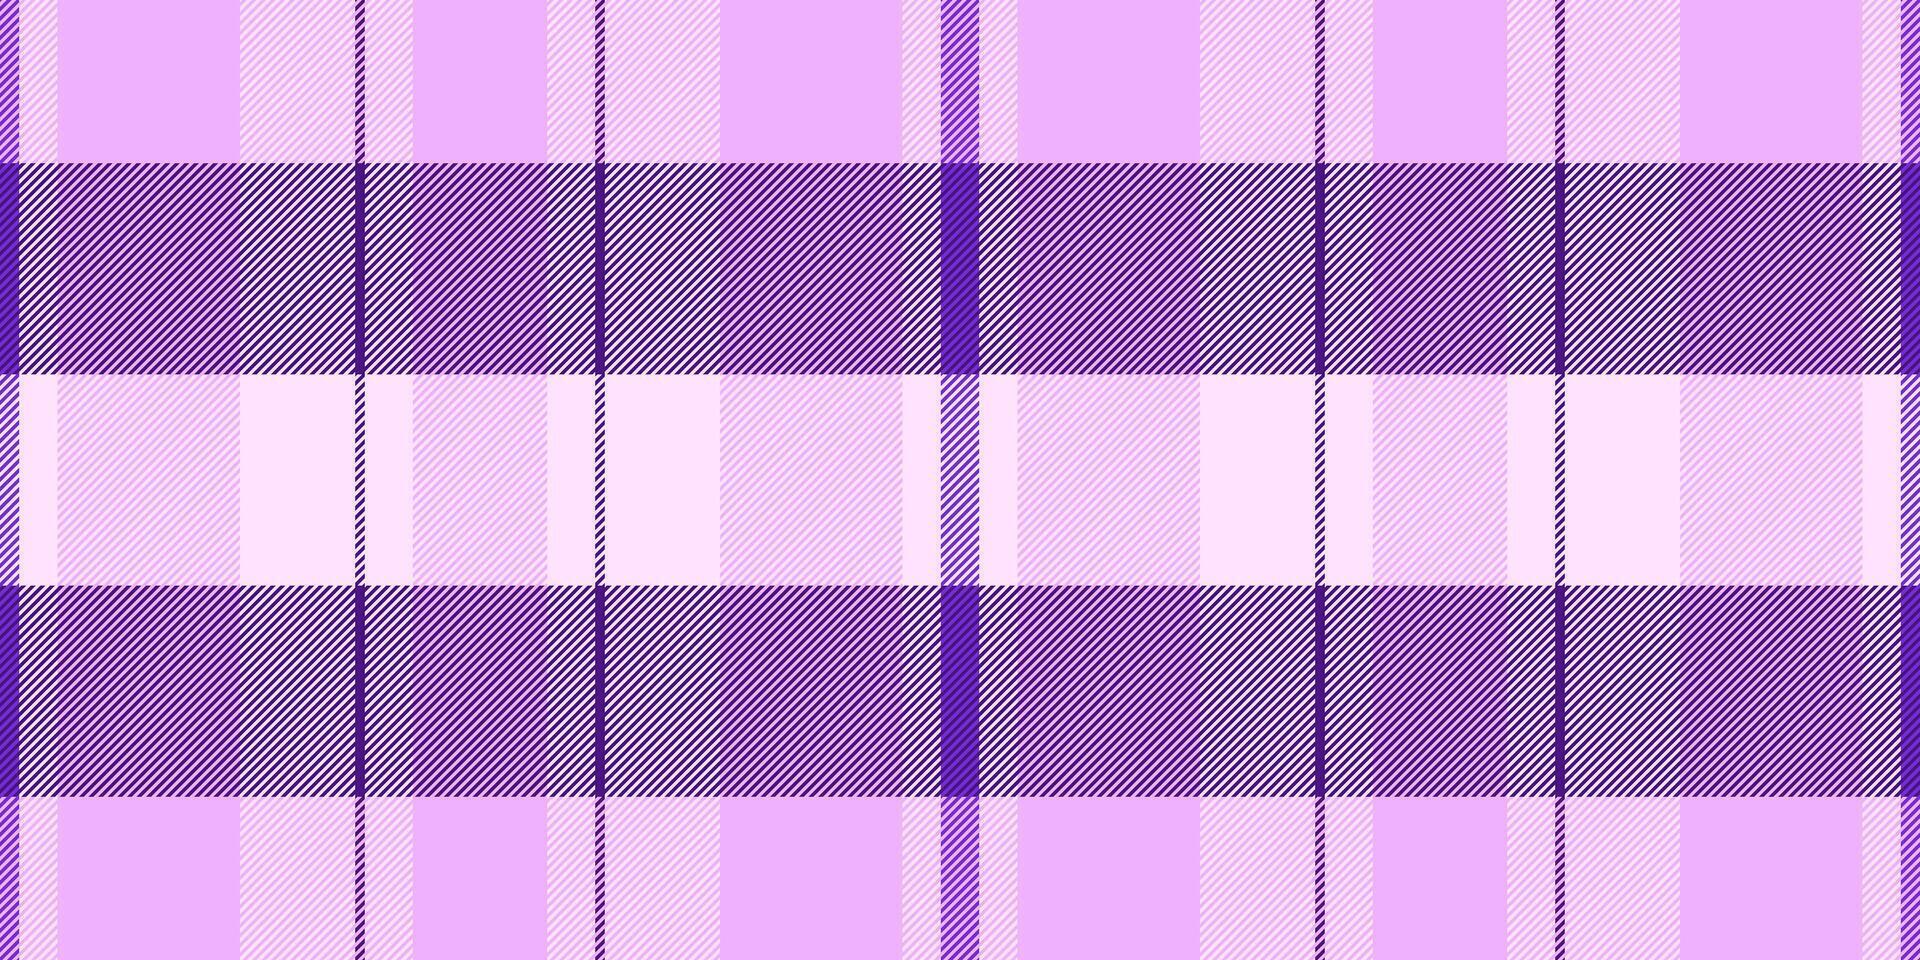 Landschaft Stoff Vektor Textil, Halbton Plaid Muster überprüfen. Marke Textur nahtlos Tartan Hintergrund im lila und violett Farben.